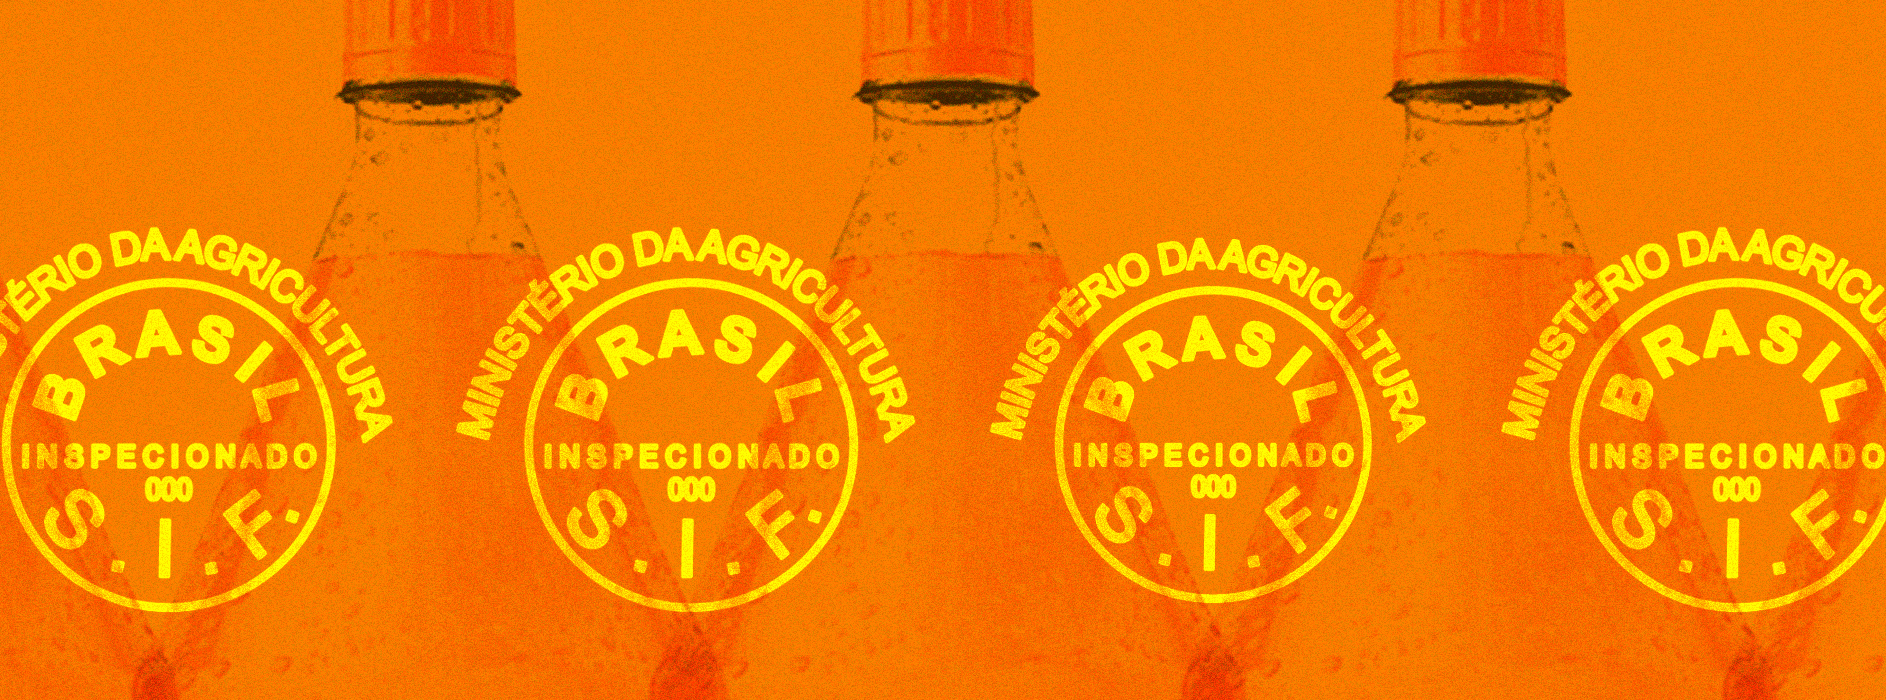 Como a indústria de alimentos moldou as leis sanitárias do Brasil